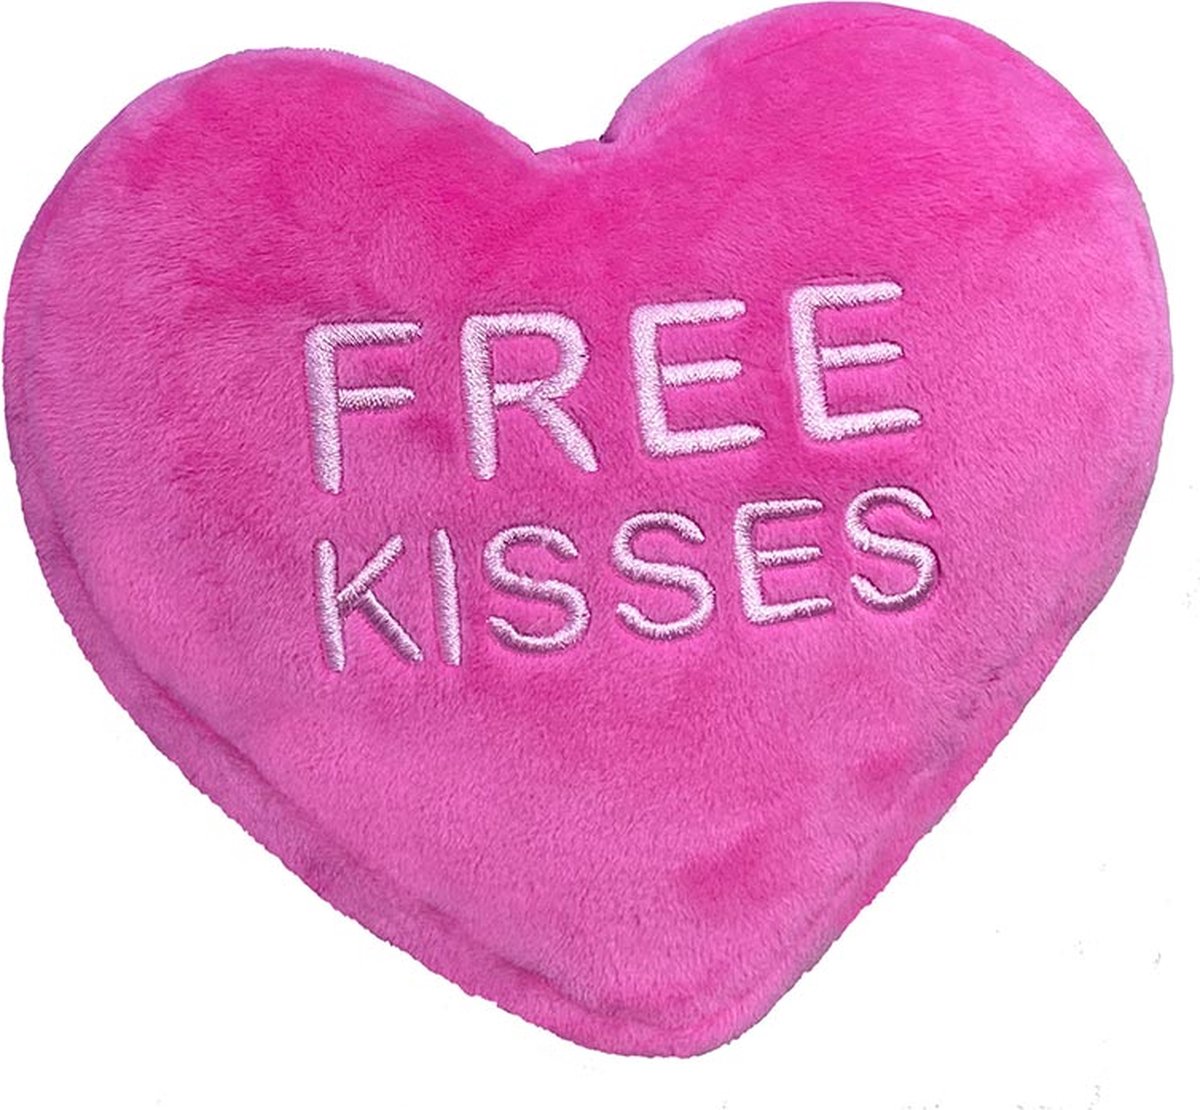 Lulubelles - Power Plush - Free Kisses Heart - hondenknuffel - hondenspeelgoed - hartje